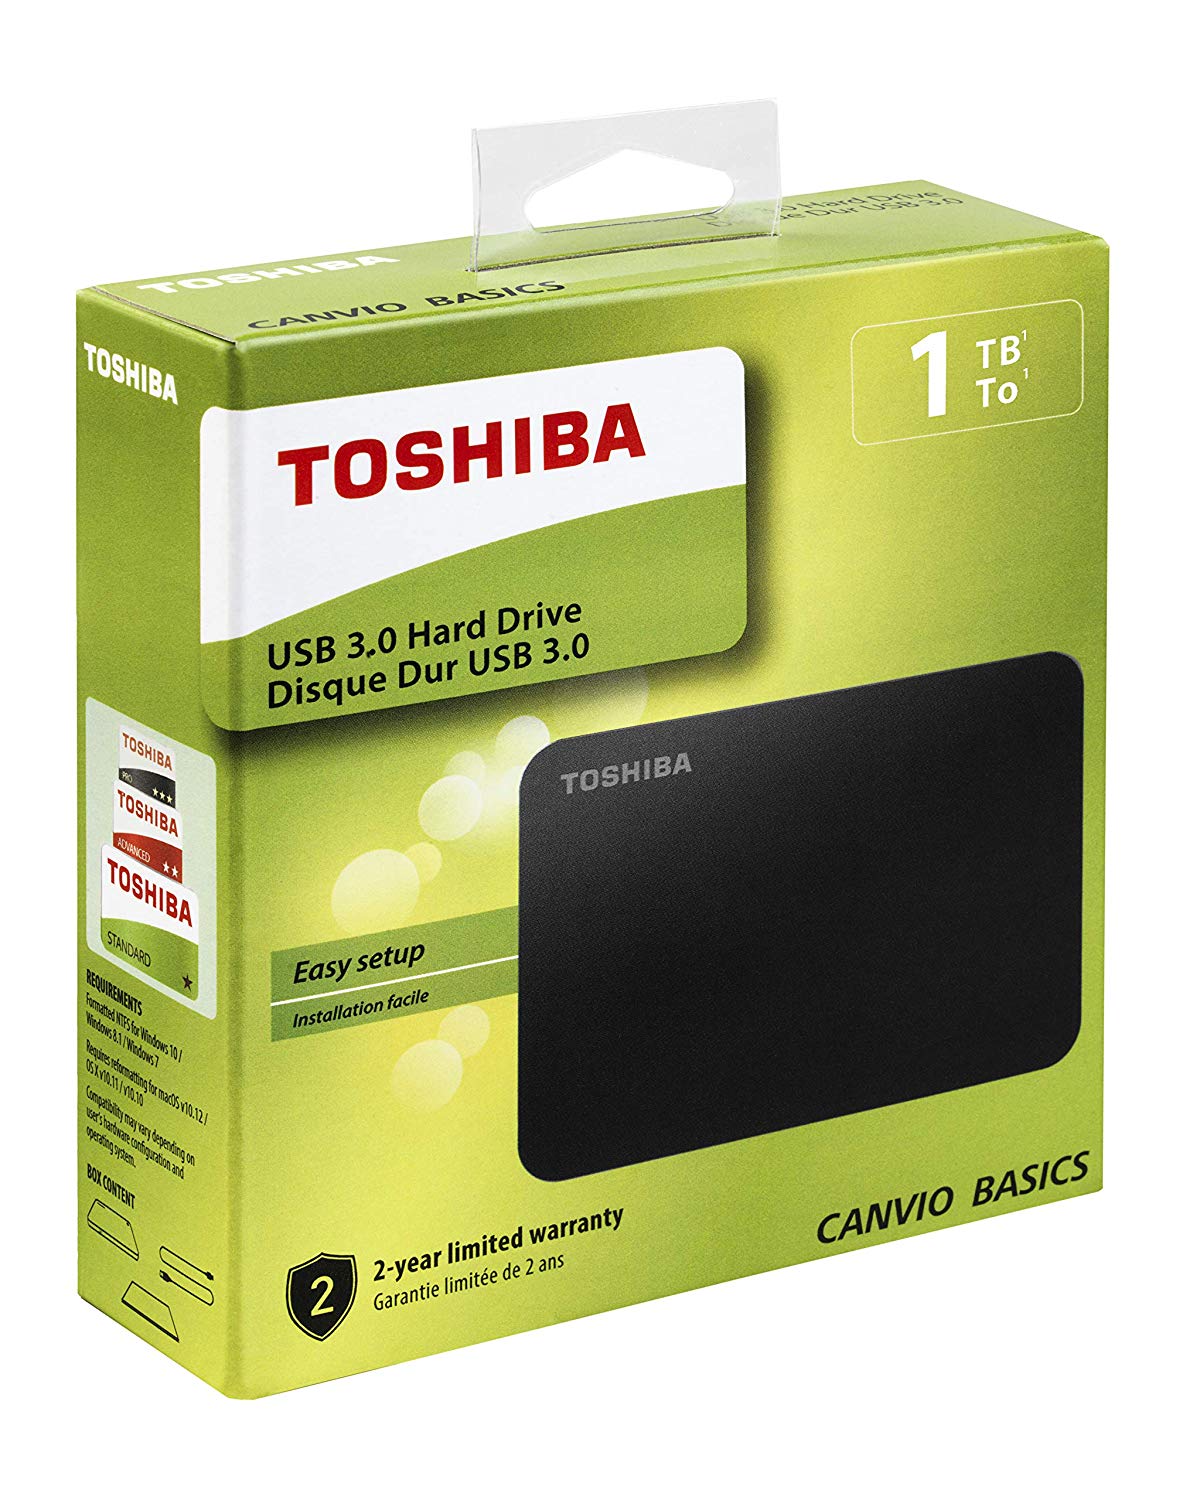 Toshiba Canvio Basics PS4 4